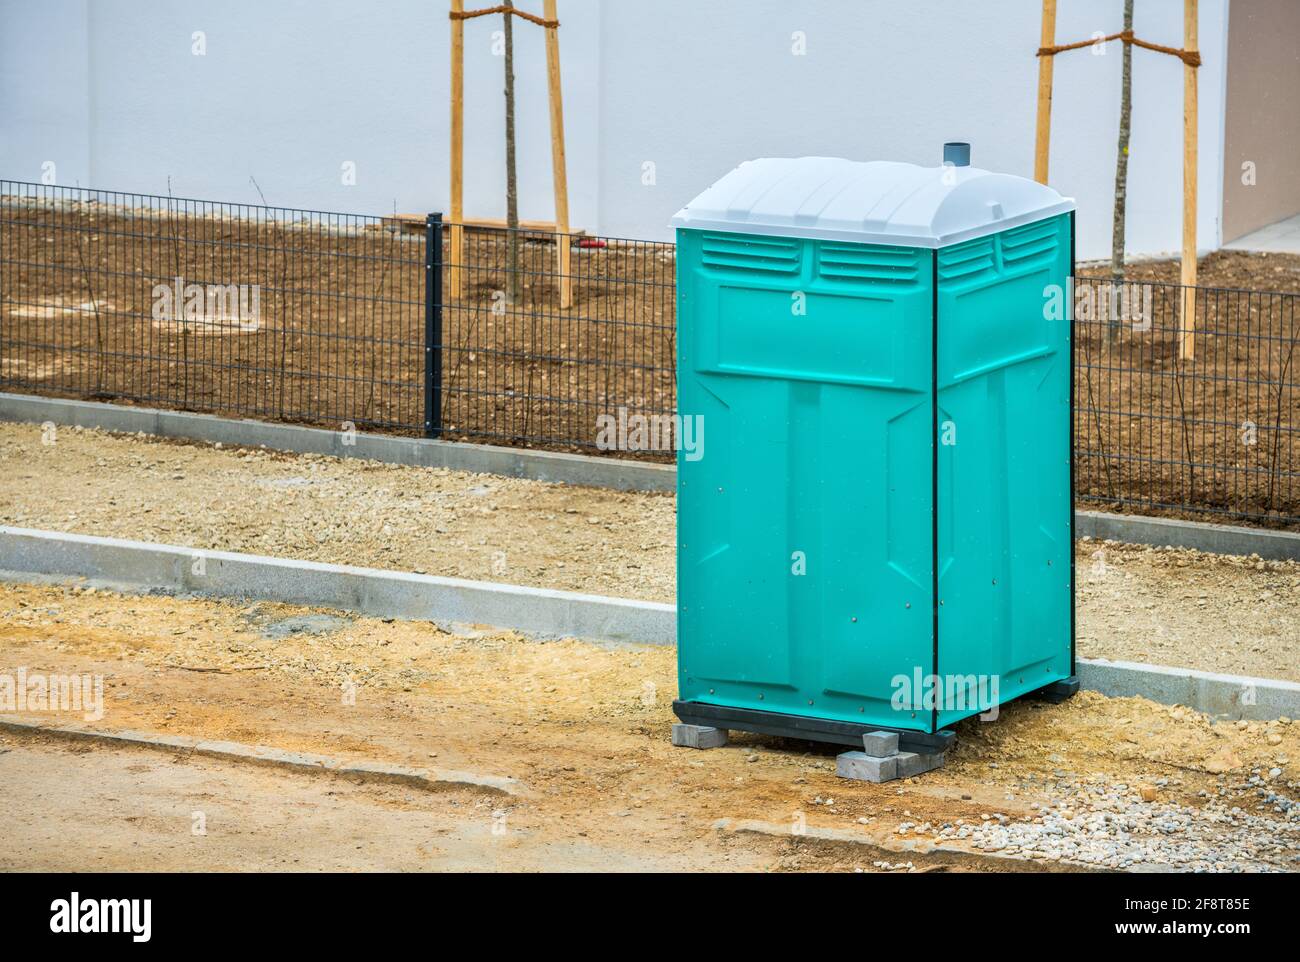 louez une toilette mobile pour les ouvriers de la construction. Service d'un fournisseur régional et d'une société de services. copyspace Banque D'Images